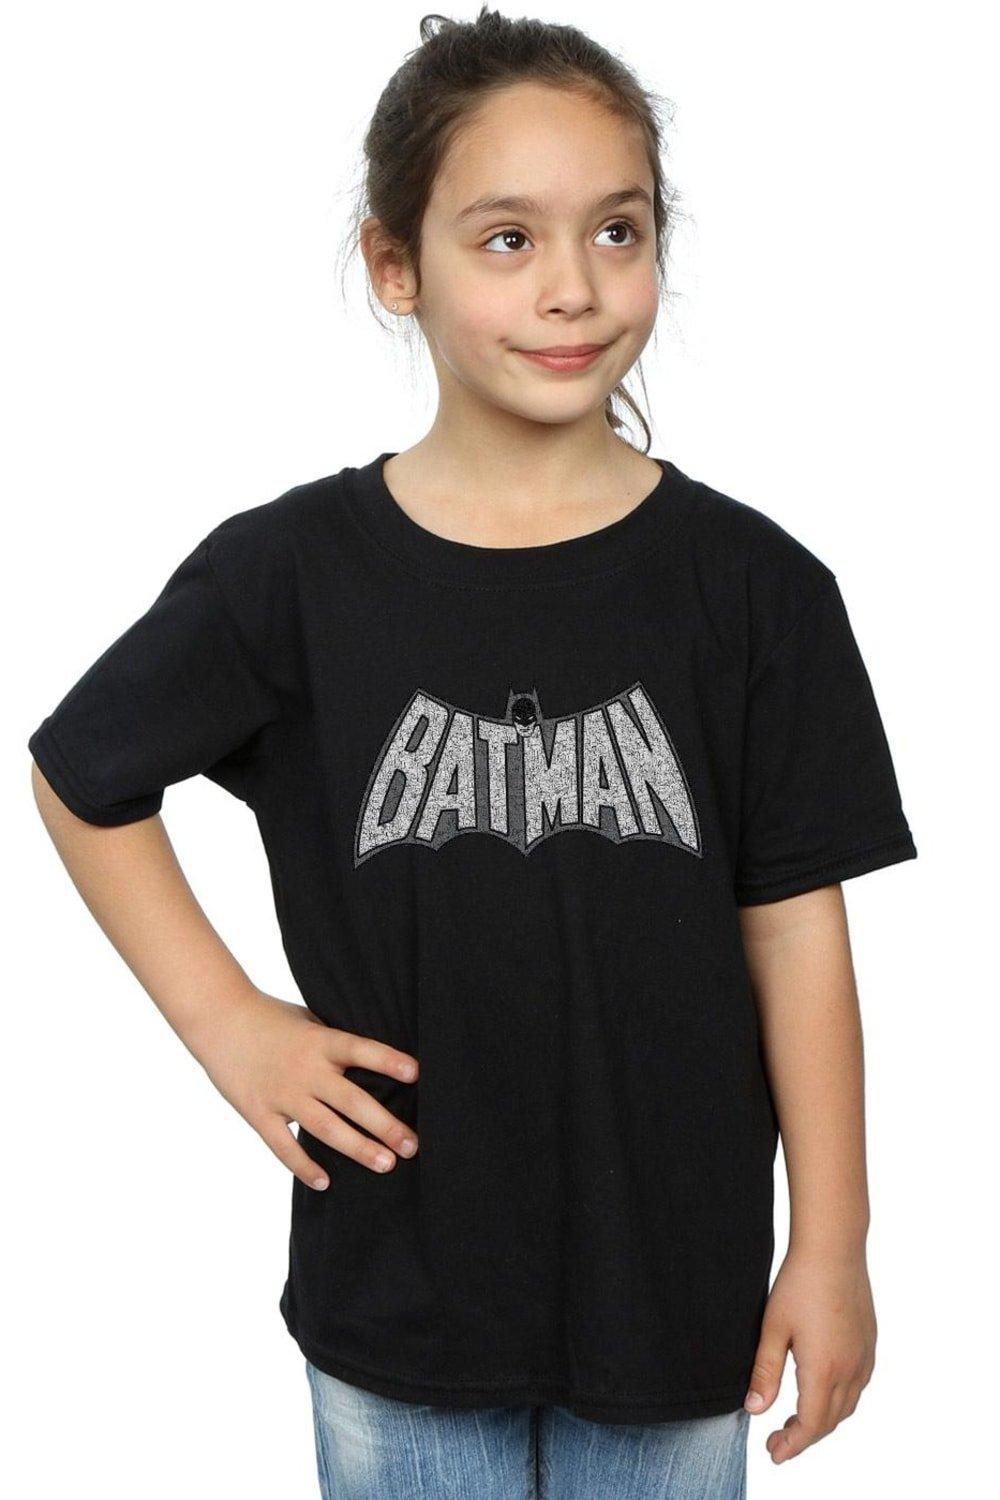 Batman Retro Crackle Logo Cotton T-Shirt